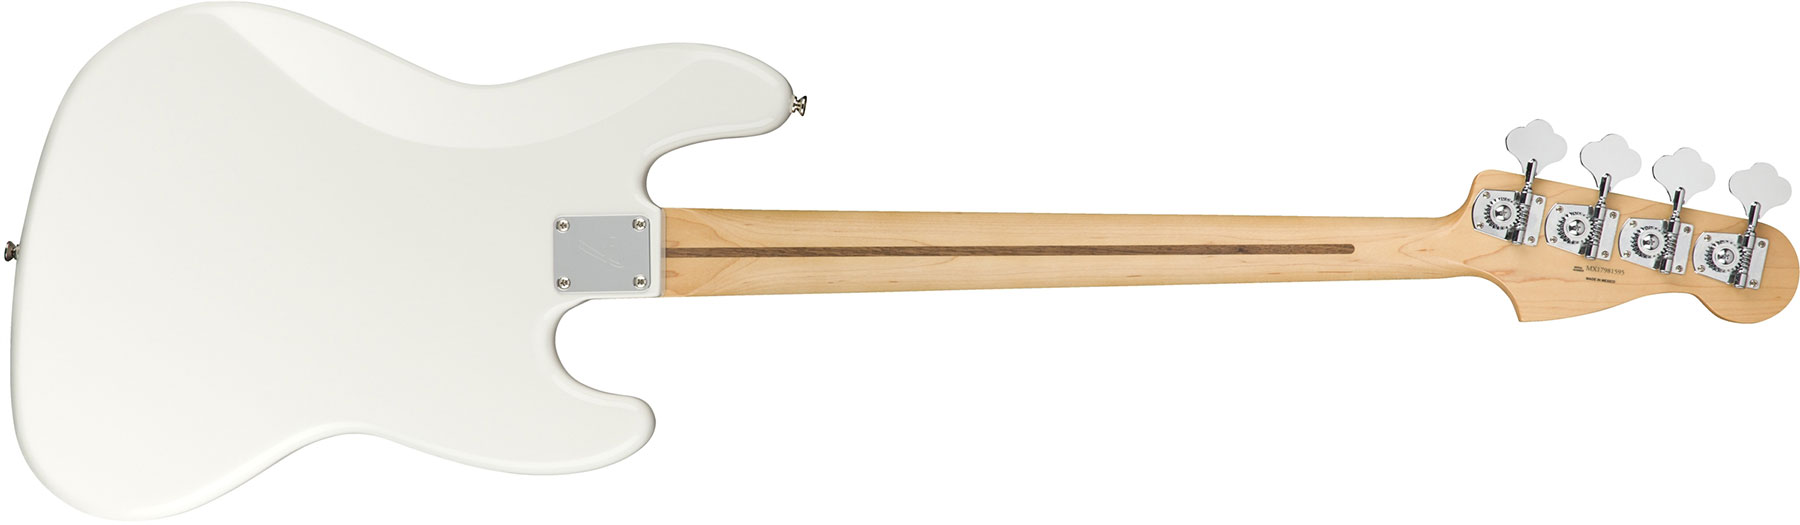 Fender Jazz Bass Player Lh Gaucher Mex Mn - Polar White - Bajo eléctrico de cuerpo sólido - Variation 1